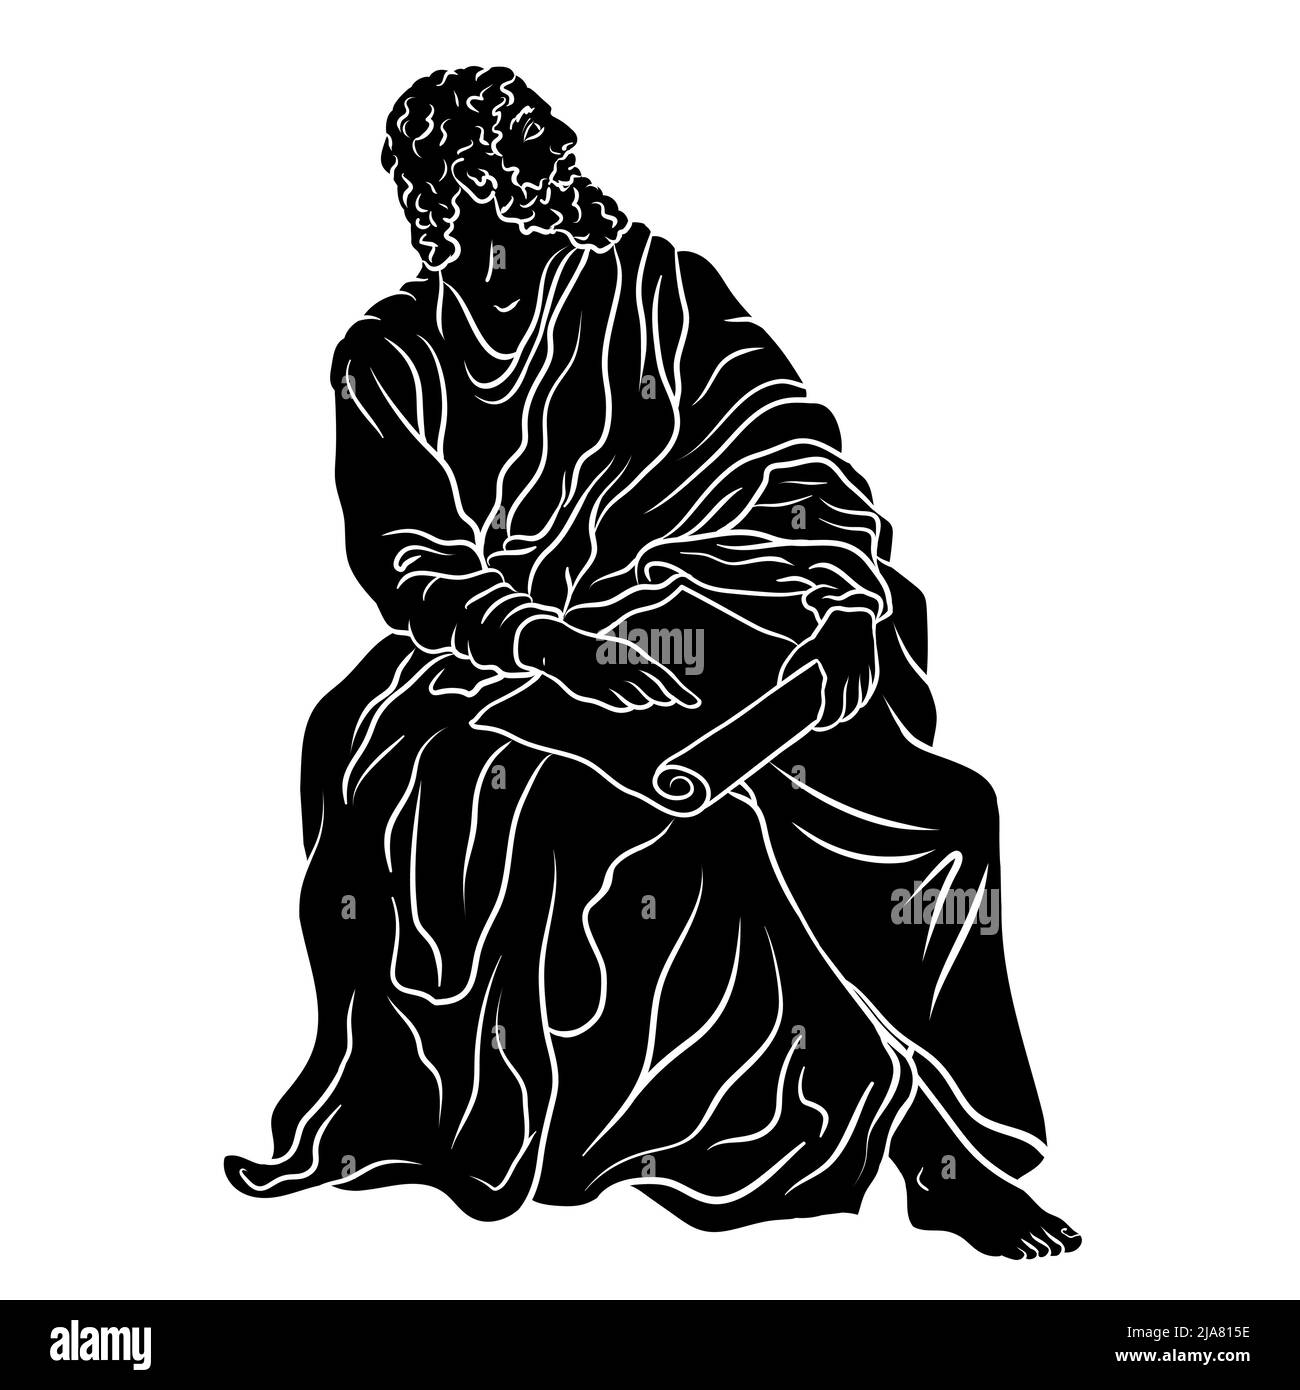 Antico greco antico uomo filosofo saggio siede con papiro nelle sue mani. Illustrazione Vettoriale